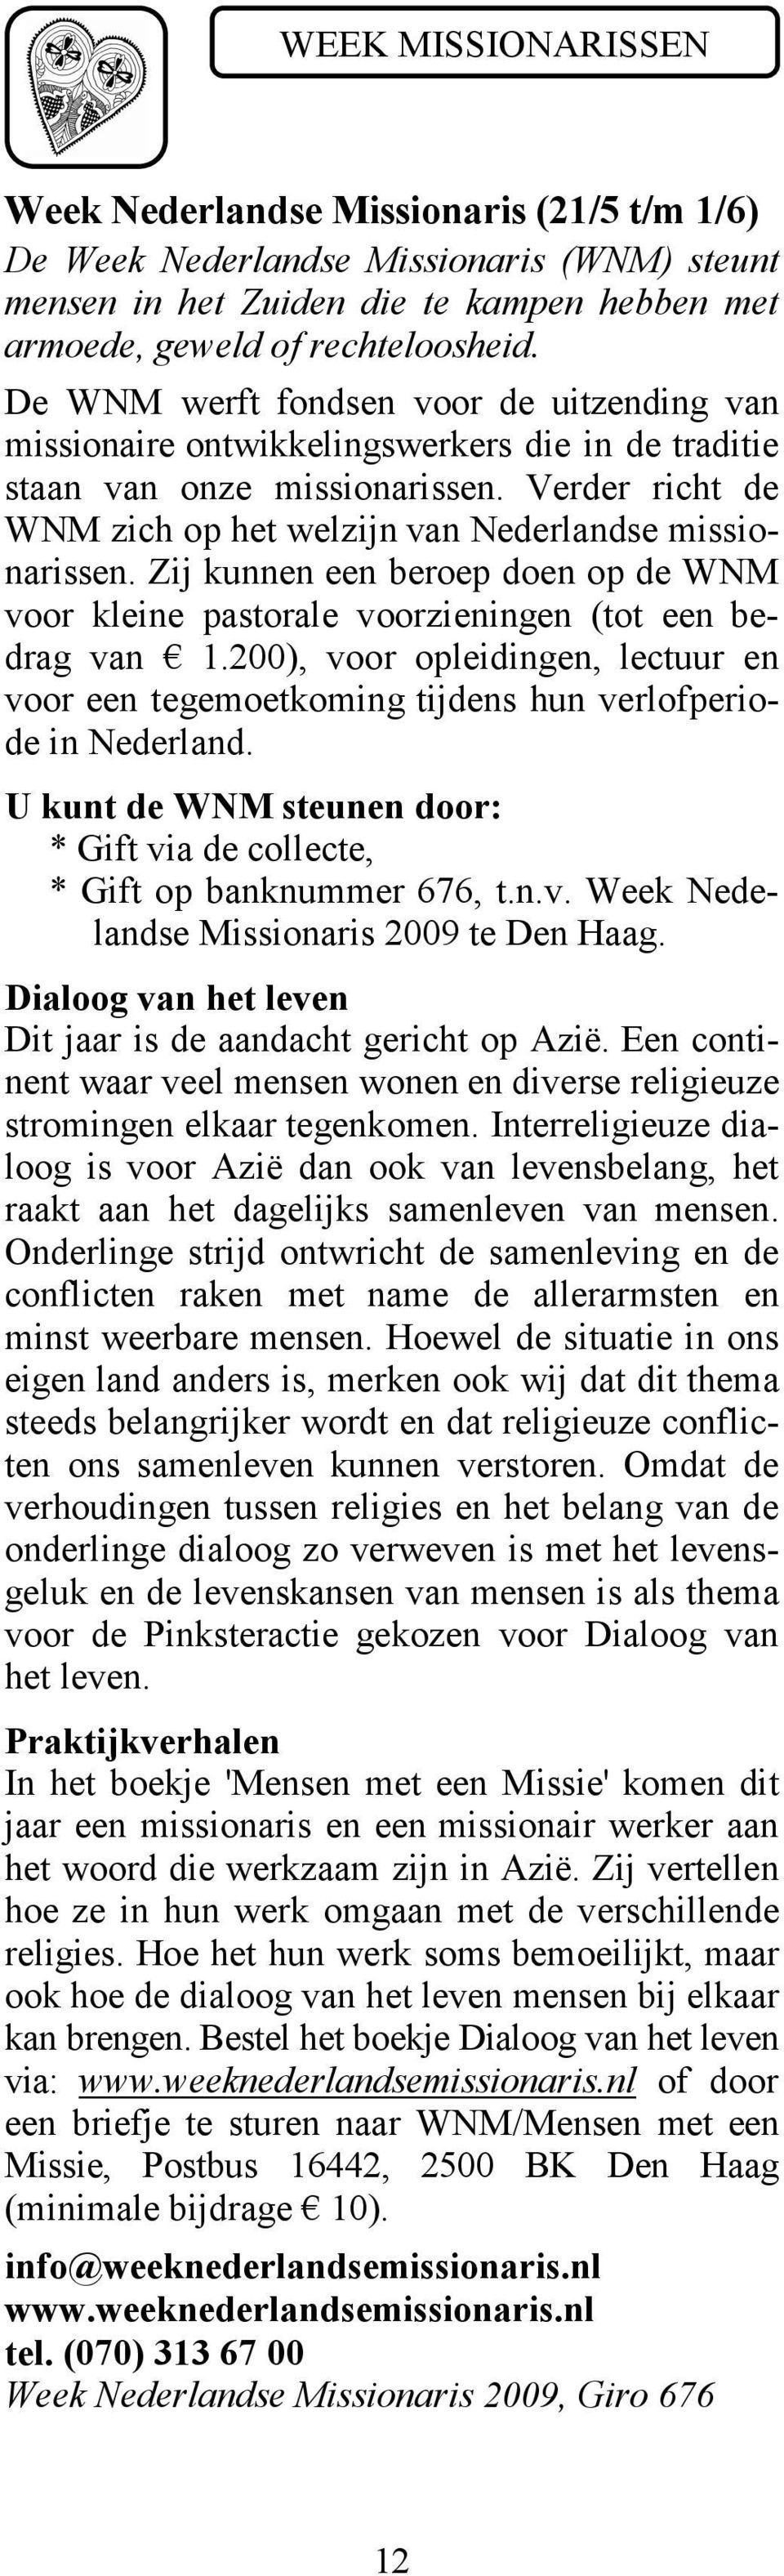 Zij kunnen een beroep doen op de WNM voor kleine pastorale voorzieningen (tot een bedrag van 1.200), voor opleidingen, lectuur en voor een tegemoetkoming tijdens hun verlofperiode in Nederland.